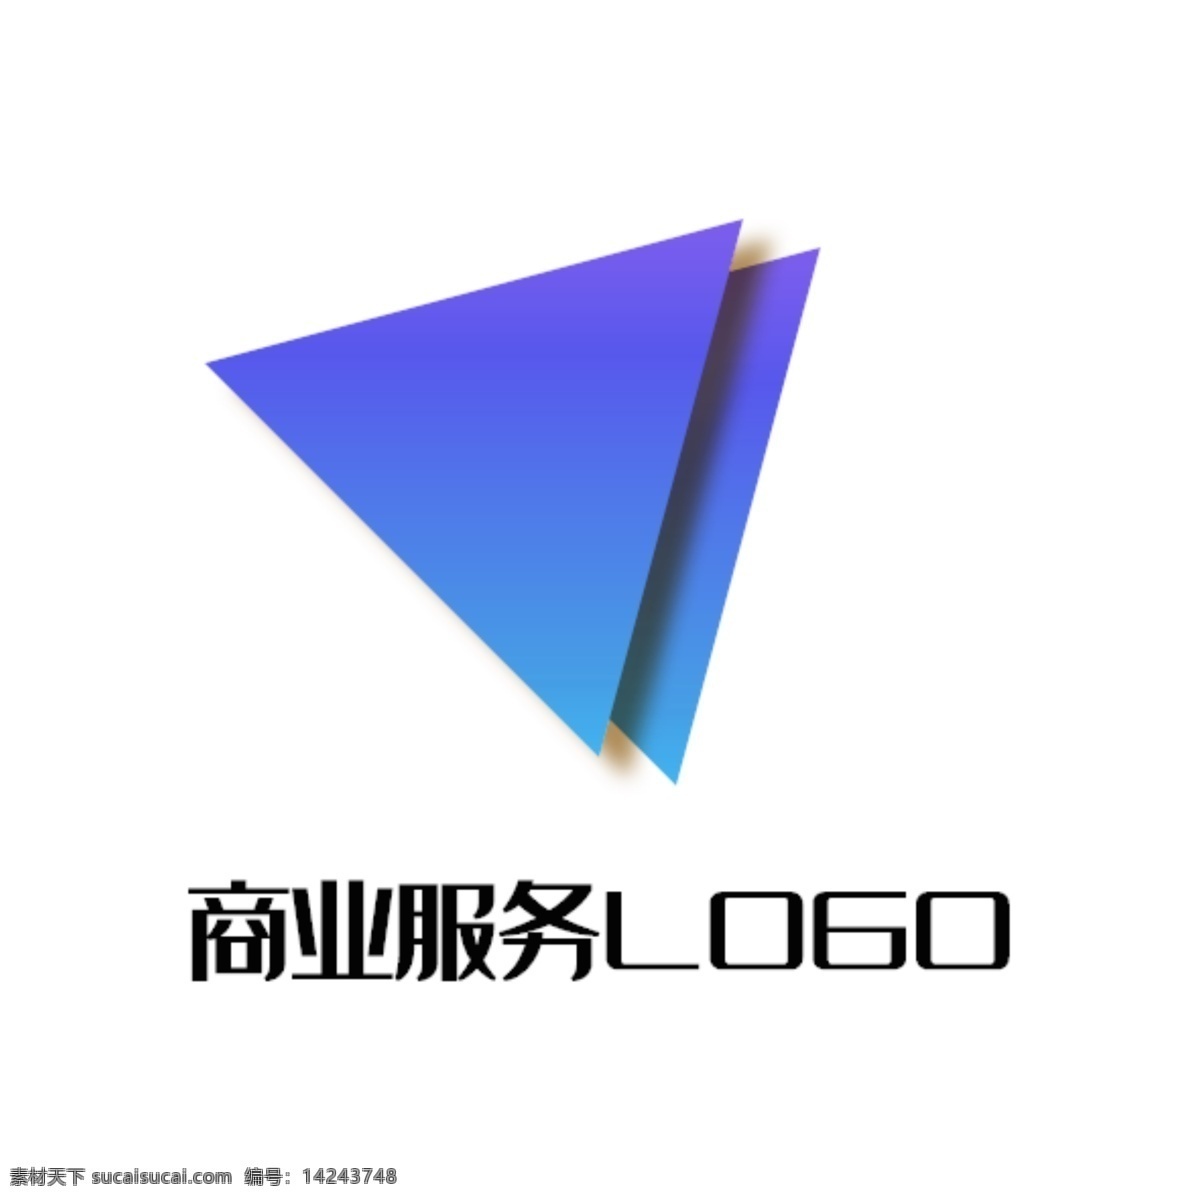 商业服务 logo 蓝紫 三角 倾斜 重叠 播放 影音 商业 服务